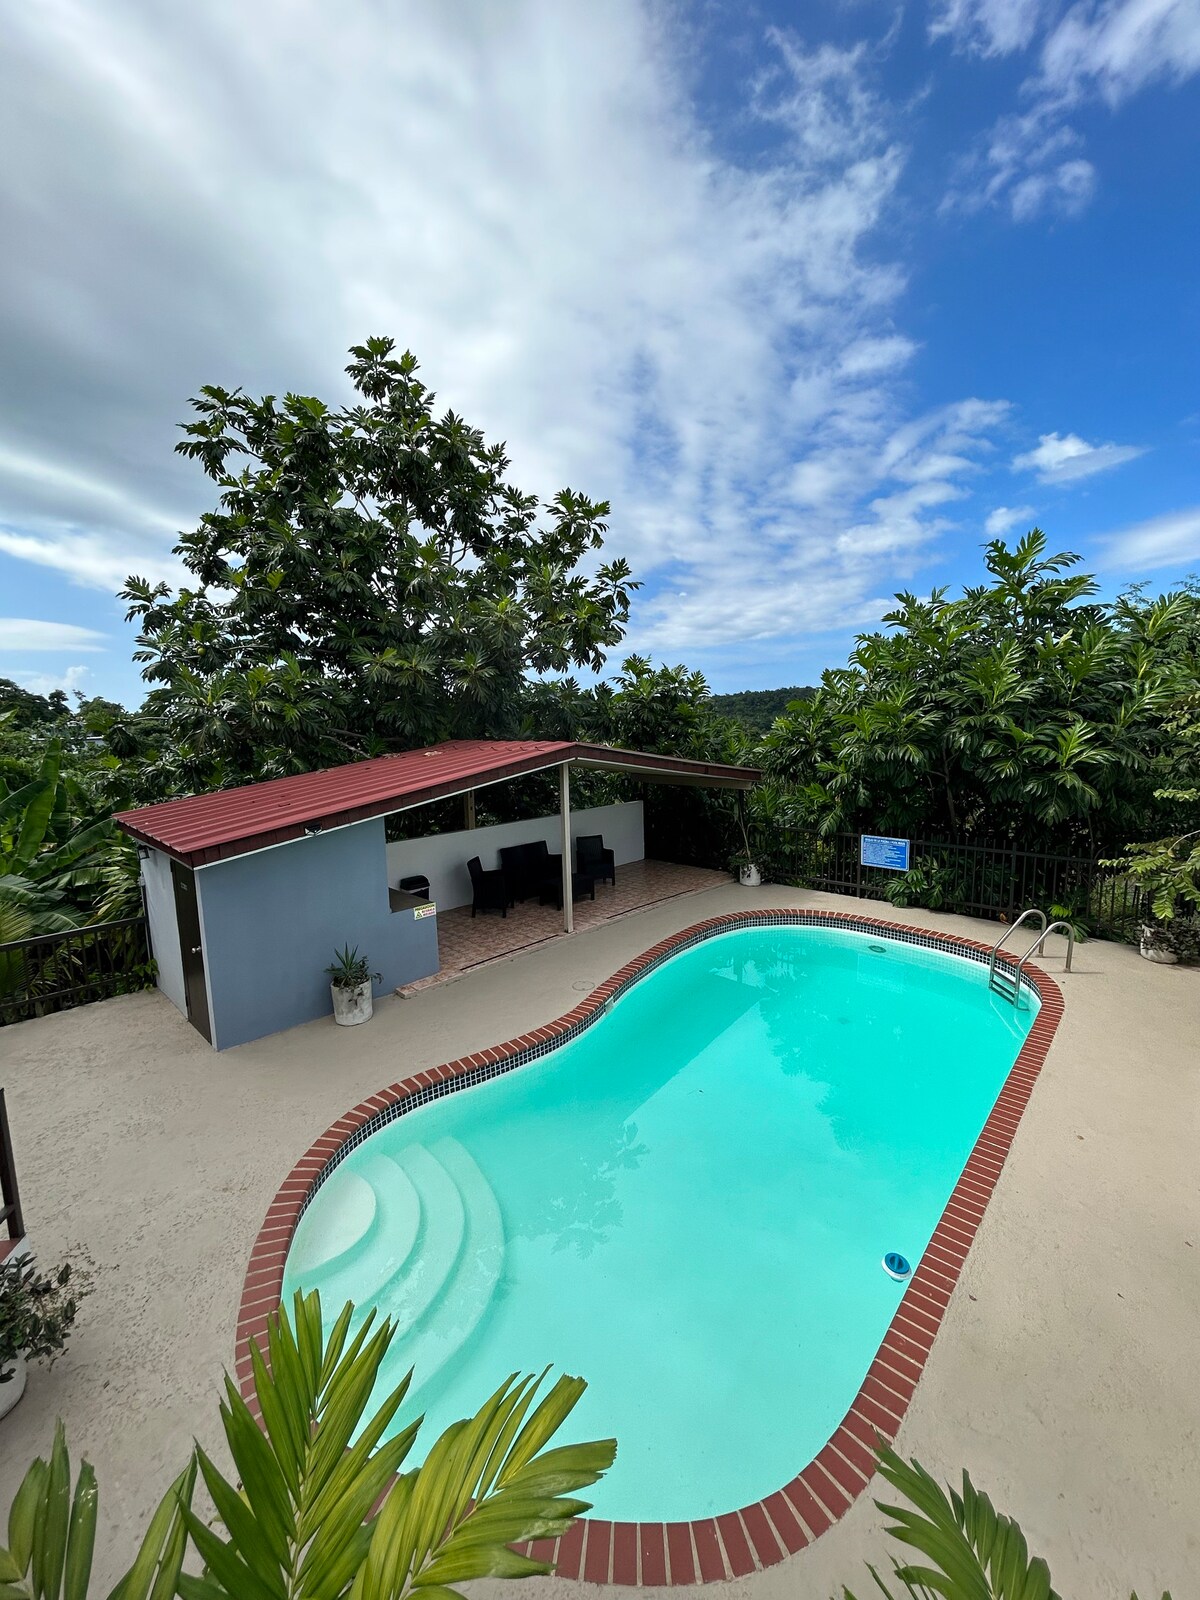 Estancia Guayabo: piscina privada entorno natural.